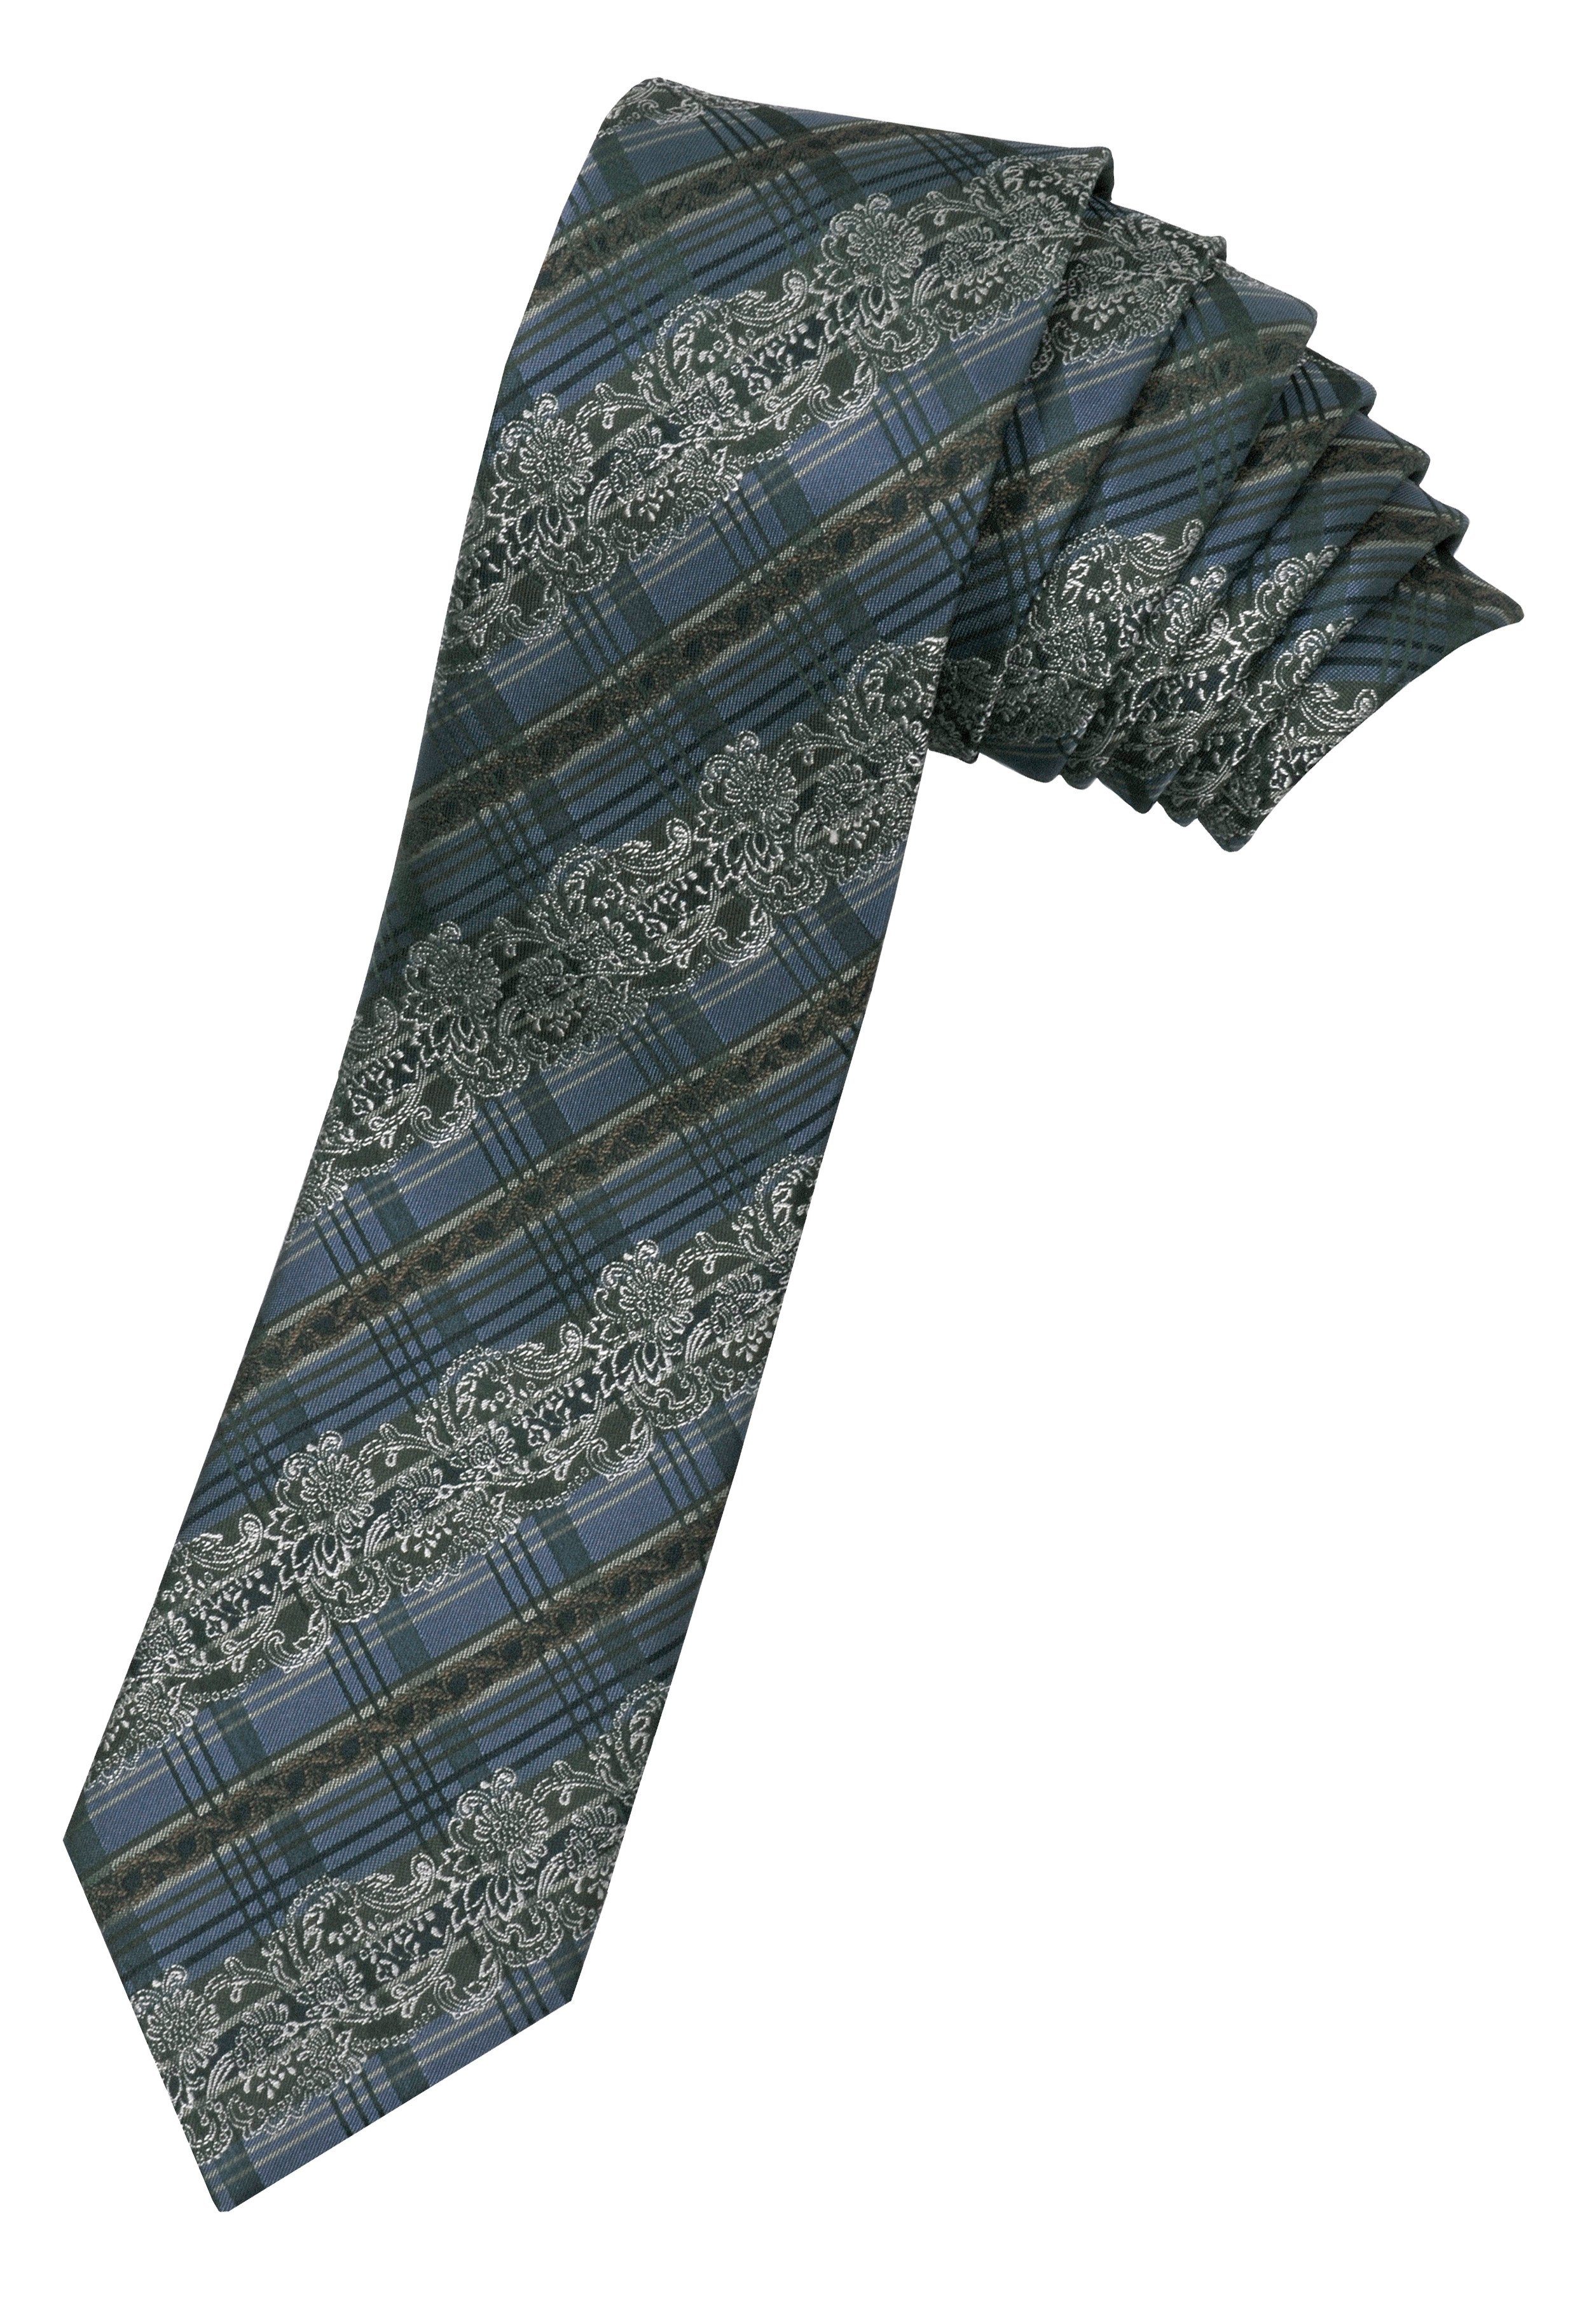 Herren Herrenkrawatte Krawatte Blau-Grün Wiener Seidenkrawatte Trachtenkrawatte edler Krawatte 100% Moschen-Bayern Seide Seiden-Jacquard